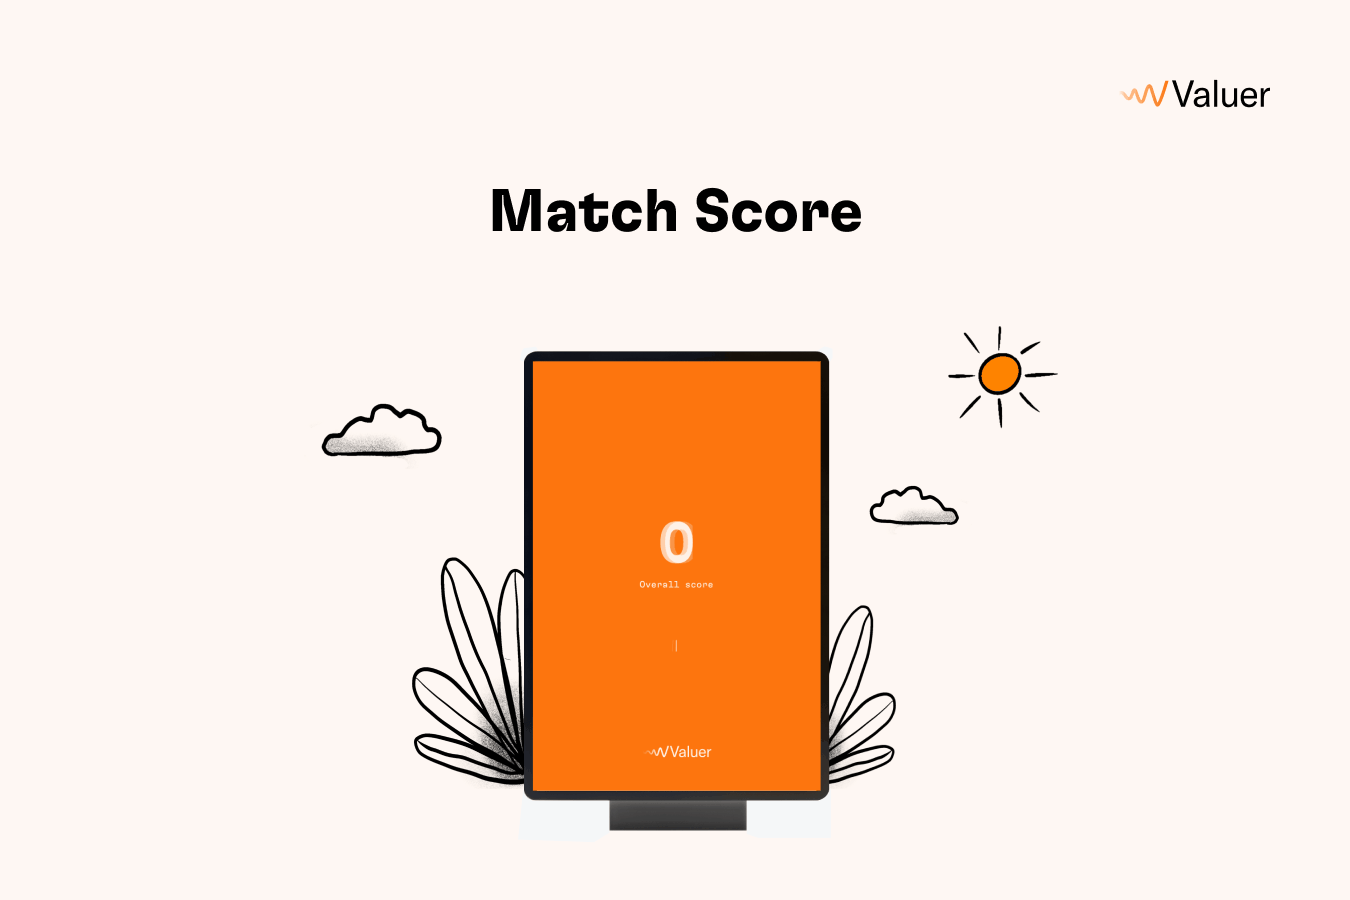 Match score